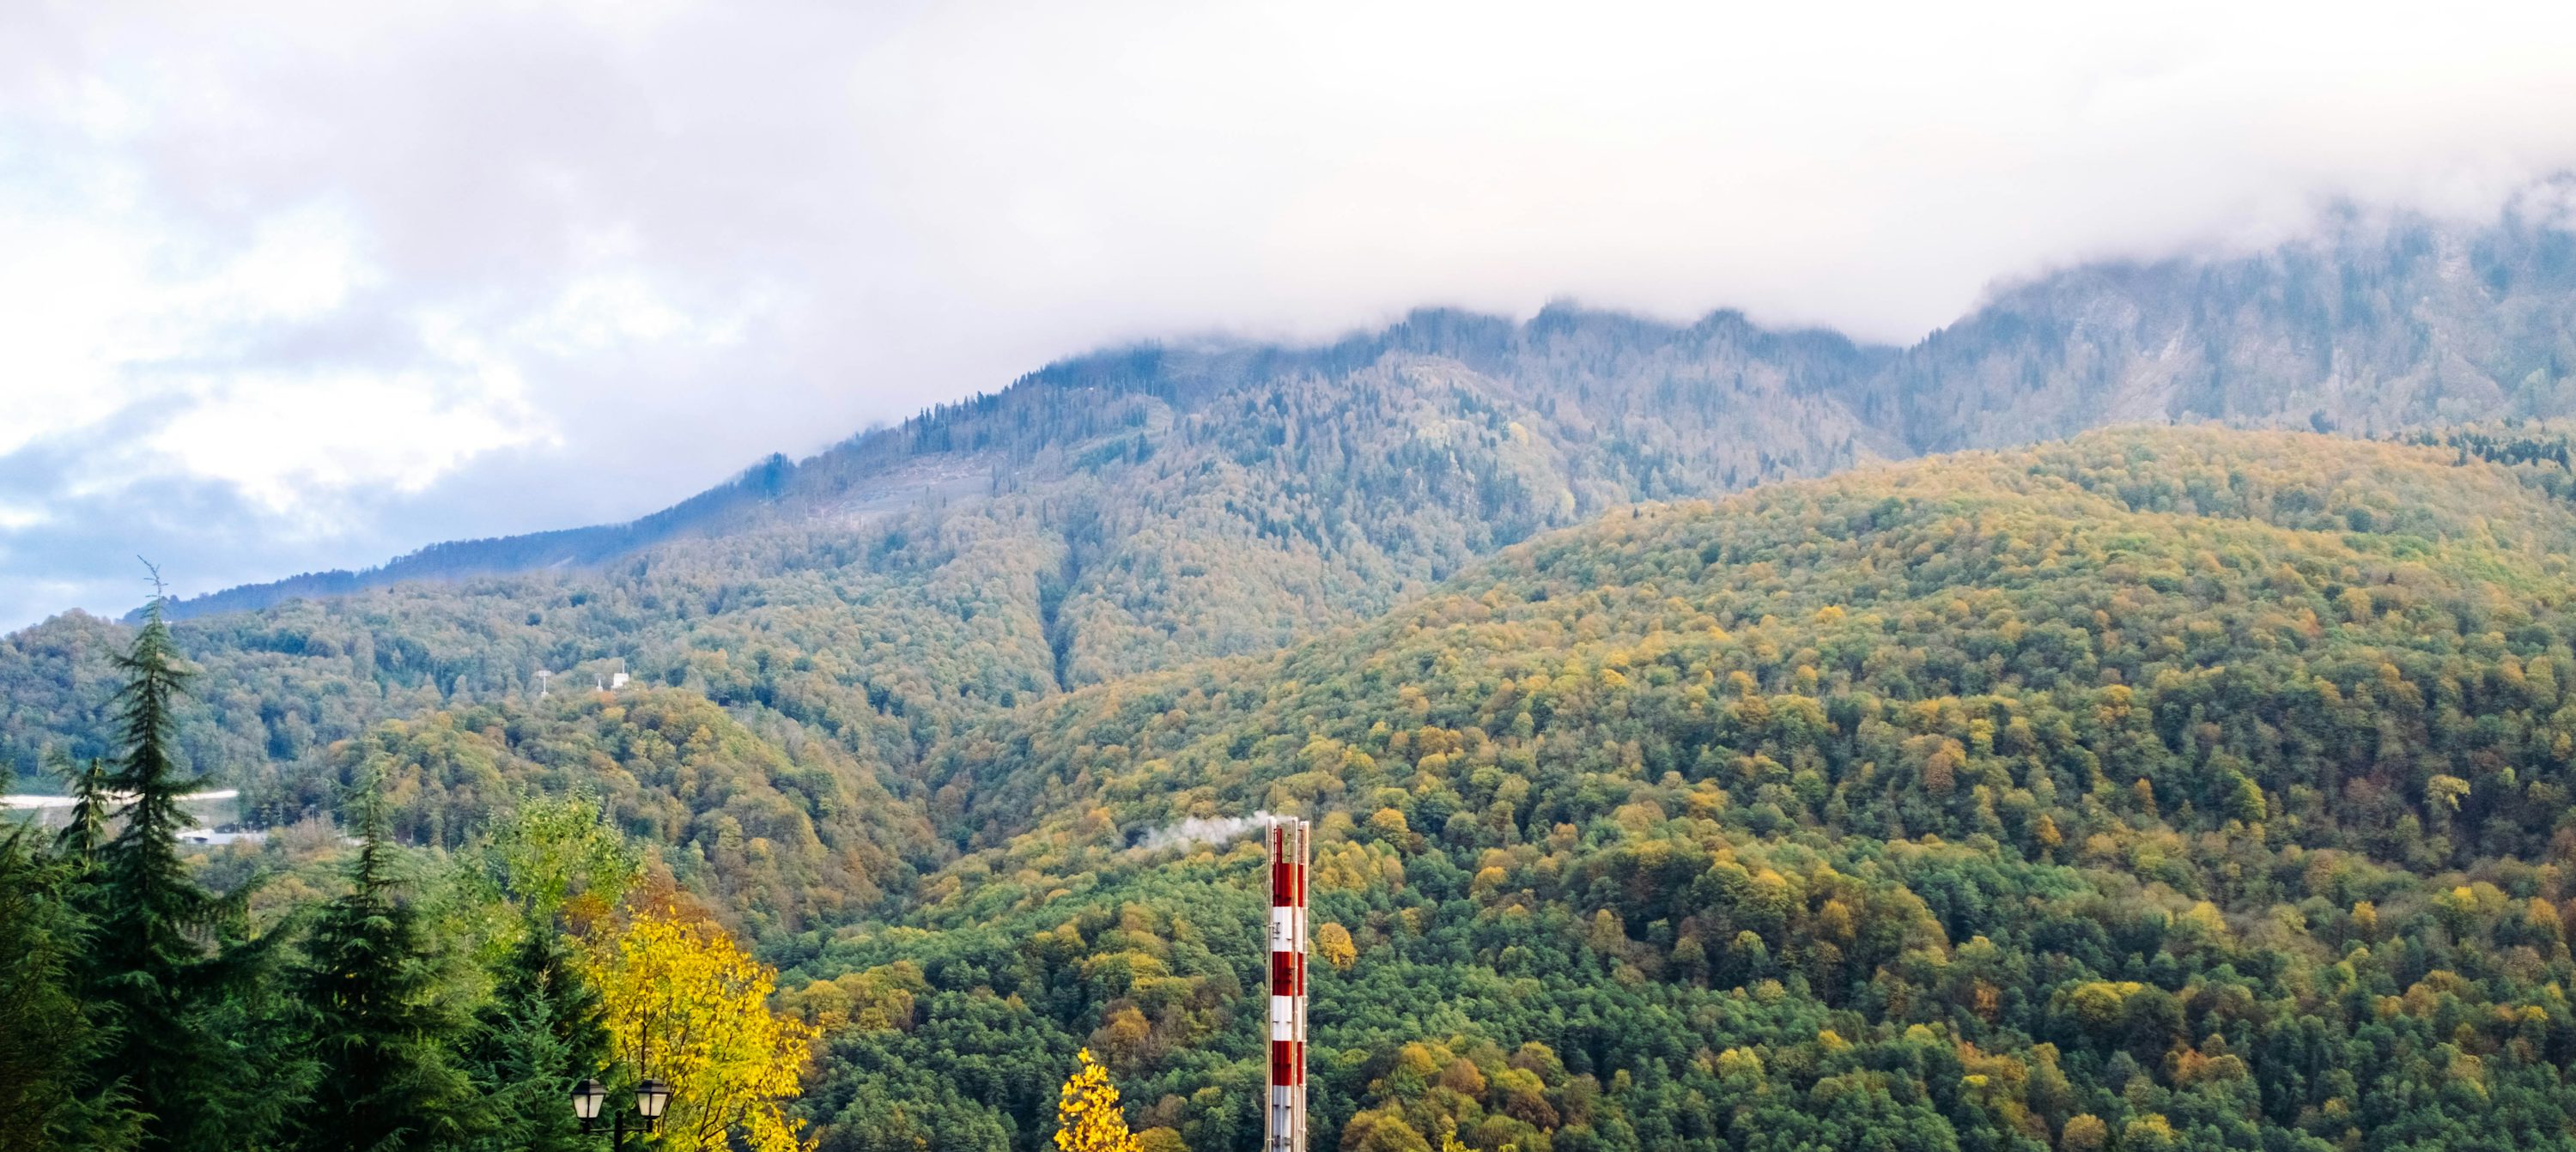 torre vermelha e branca no campo de grama verde perto de montanhas verdes durante o dia